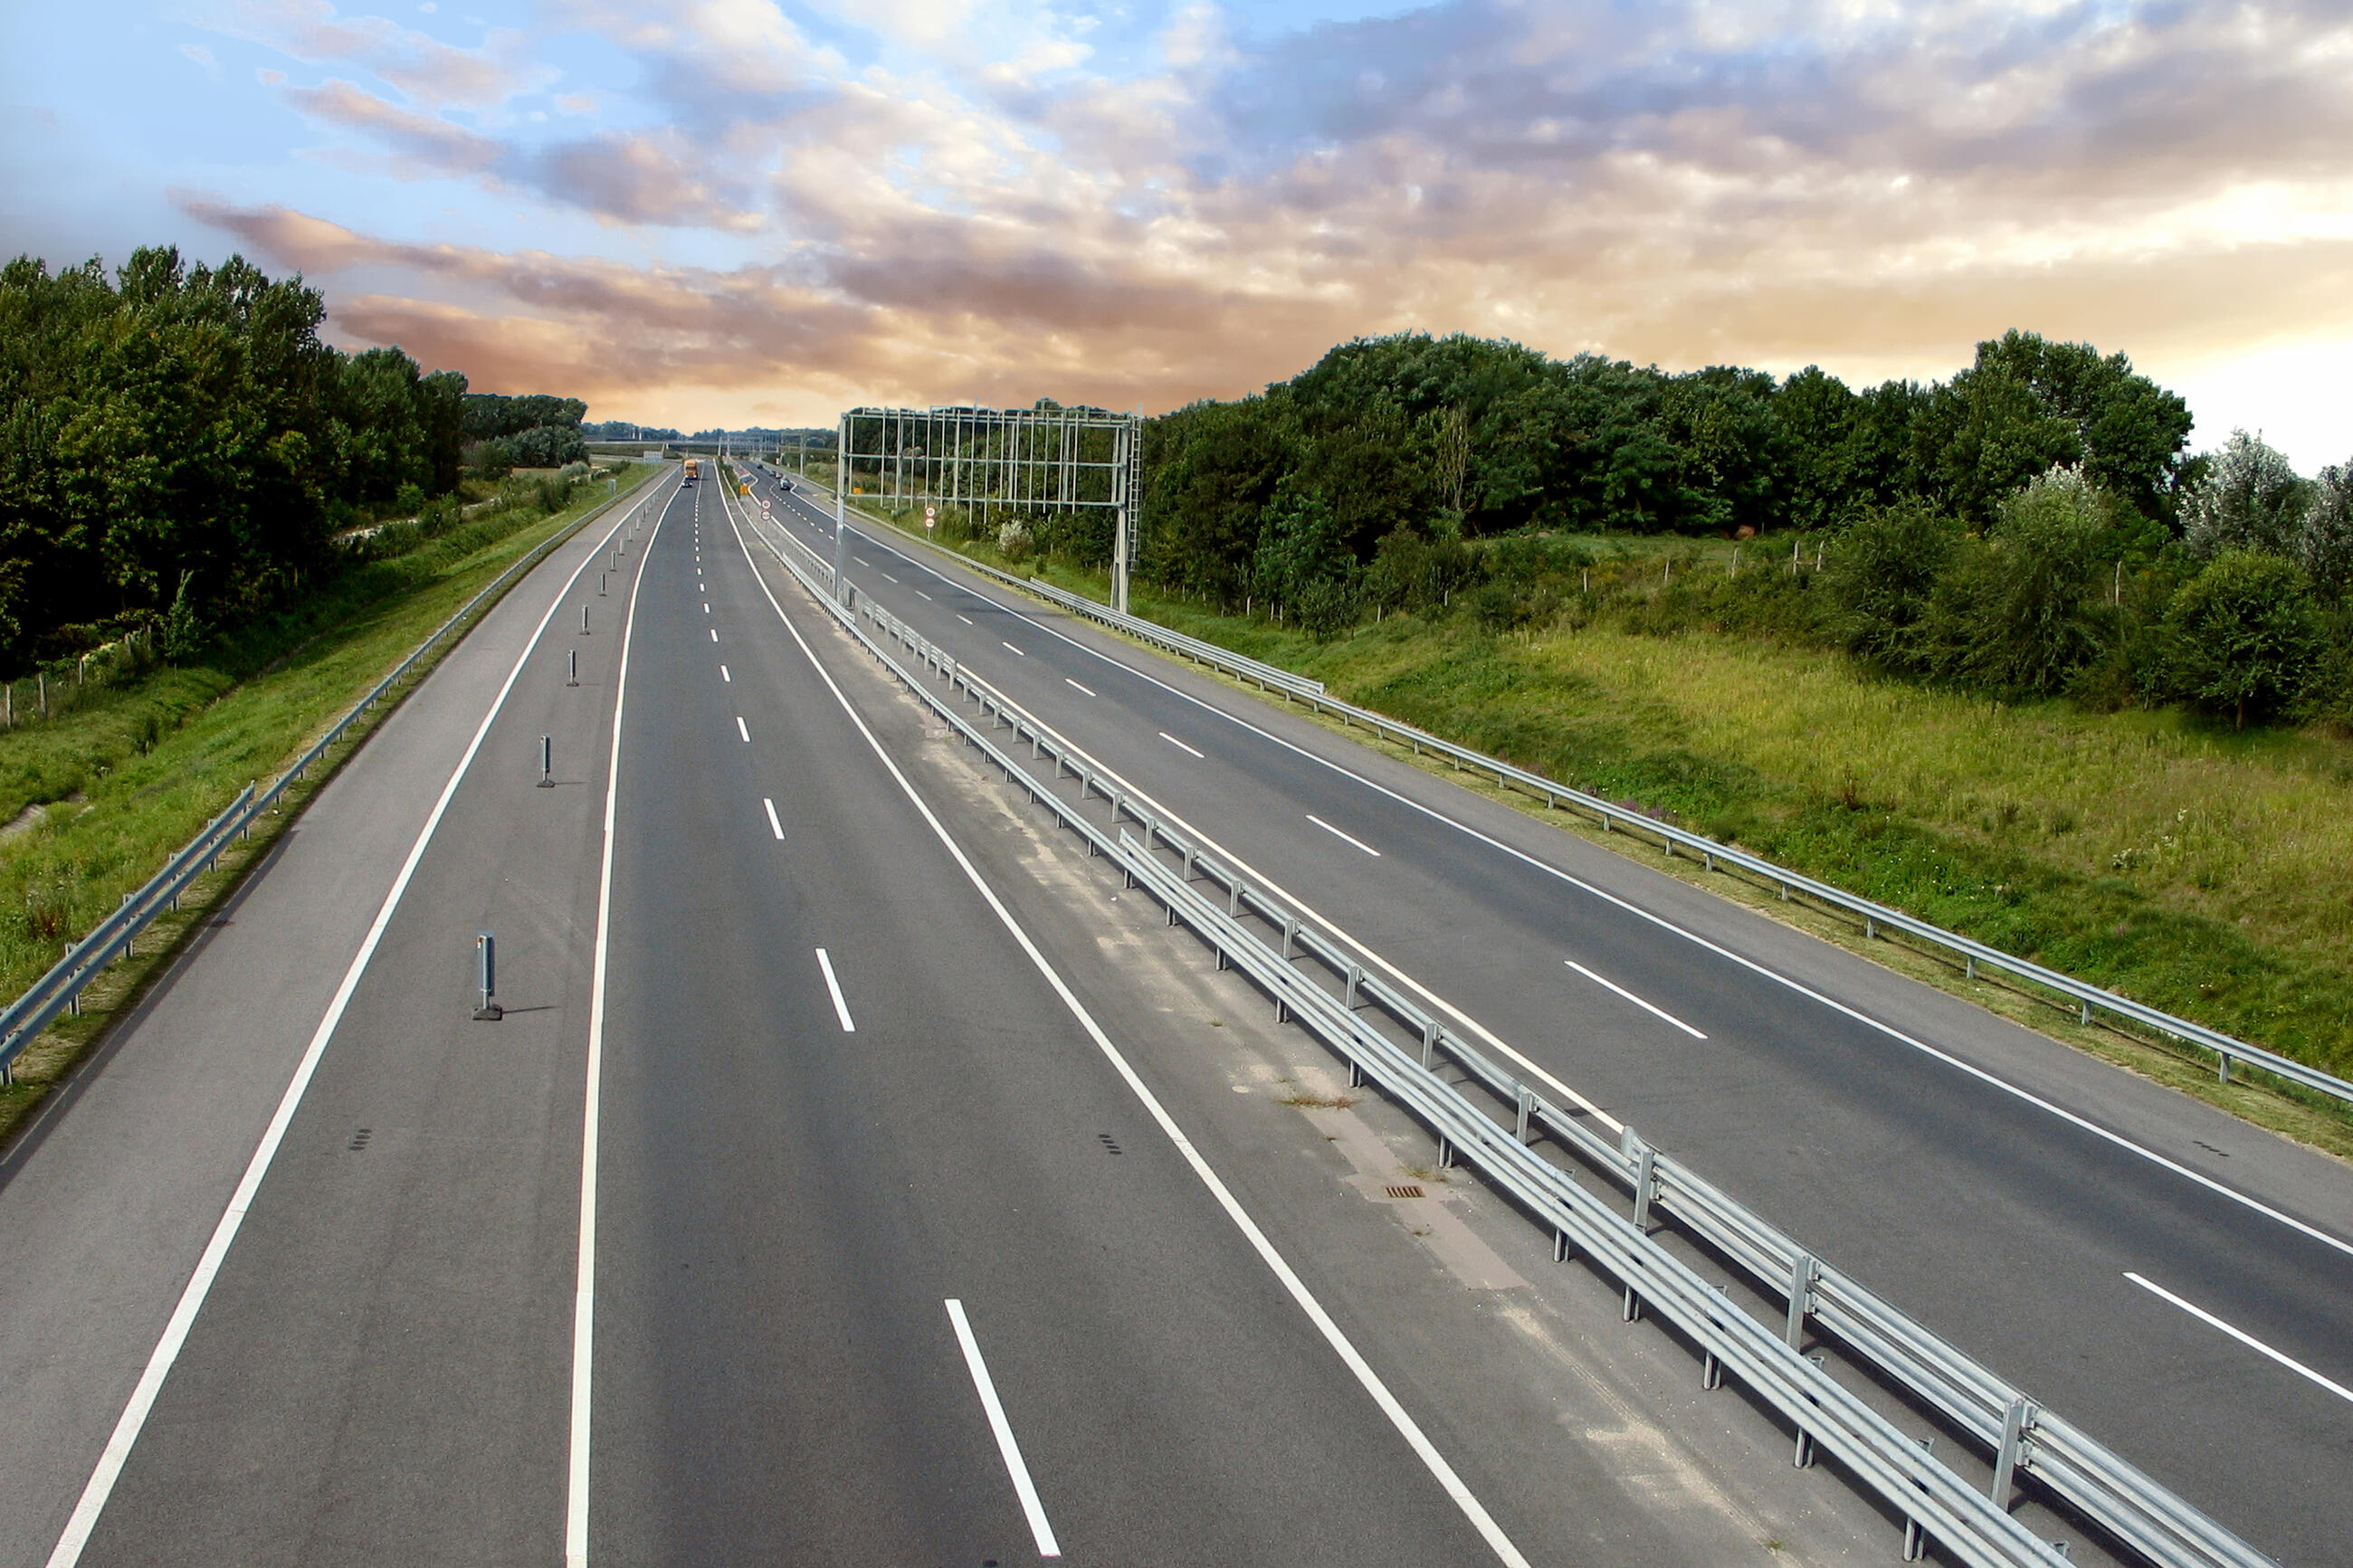 Дорога шоссейного типа как называется. Автомагистраль a13 в Румынии. Автомагистрали Венгрии. Шоссейная дорога. Шоссейные дороги.